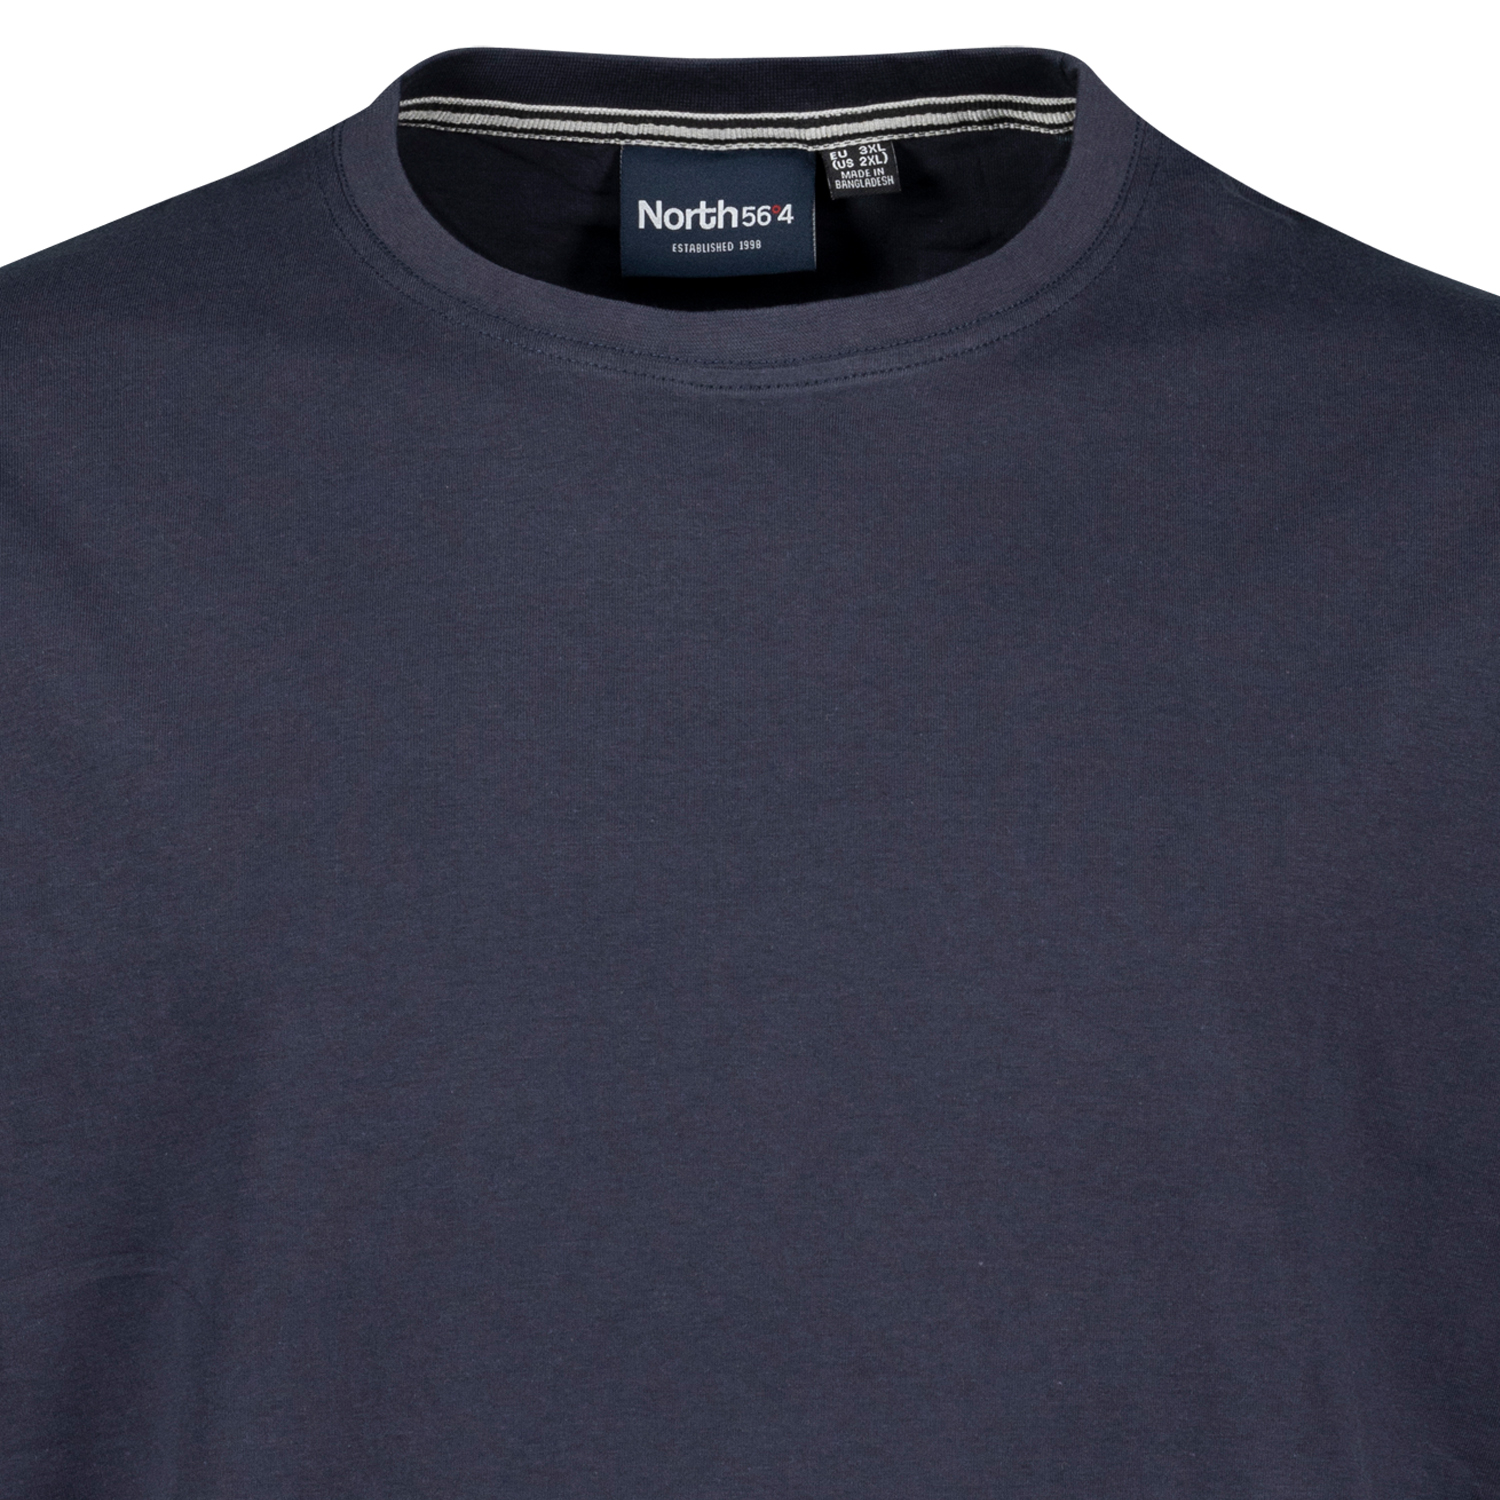 Basic-T-Shirt in dunkelblau von North 56°4 in großen Größen bis 8 XL